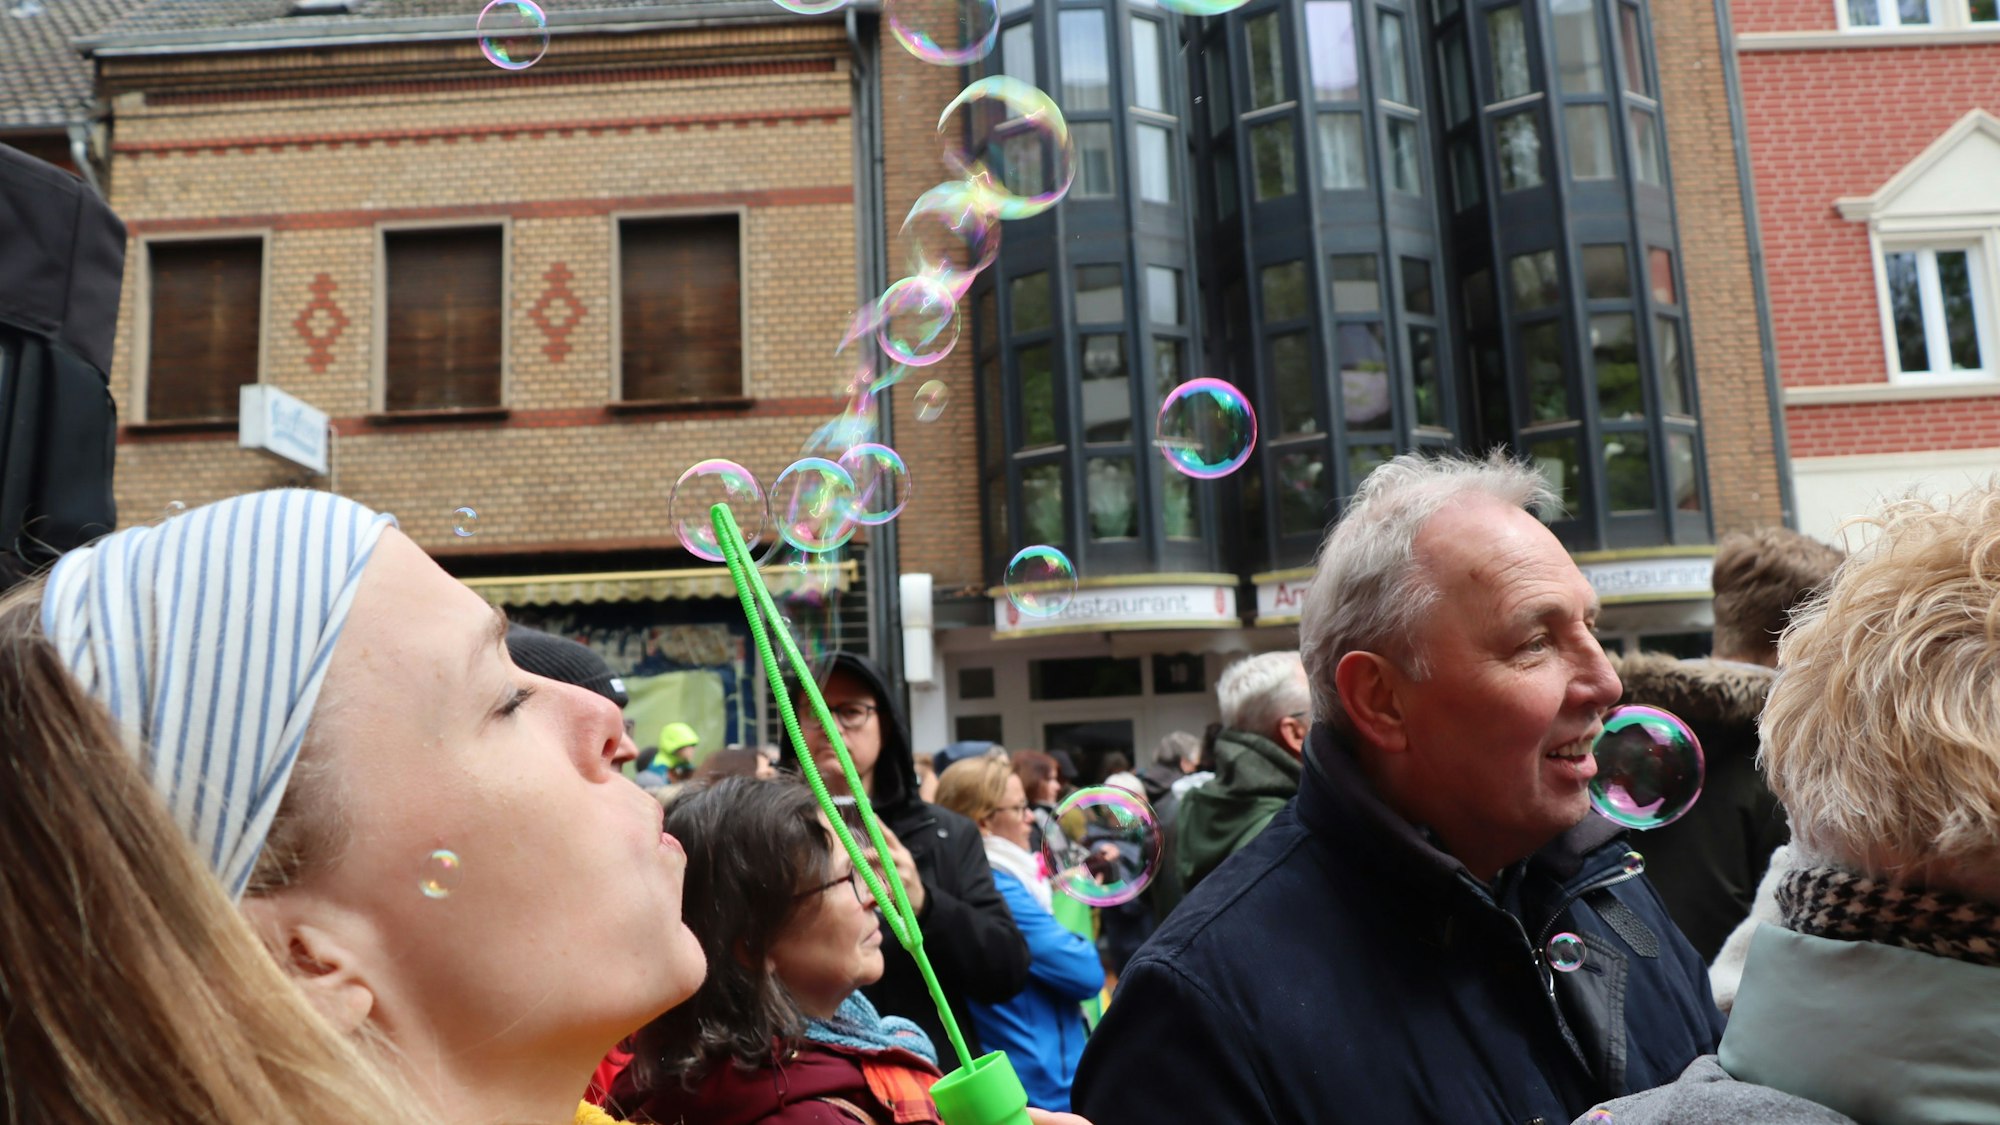 Auf dem Foto ist eine junge Frau zu sehen, die Seifenblasen erzeugt.